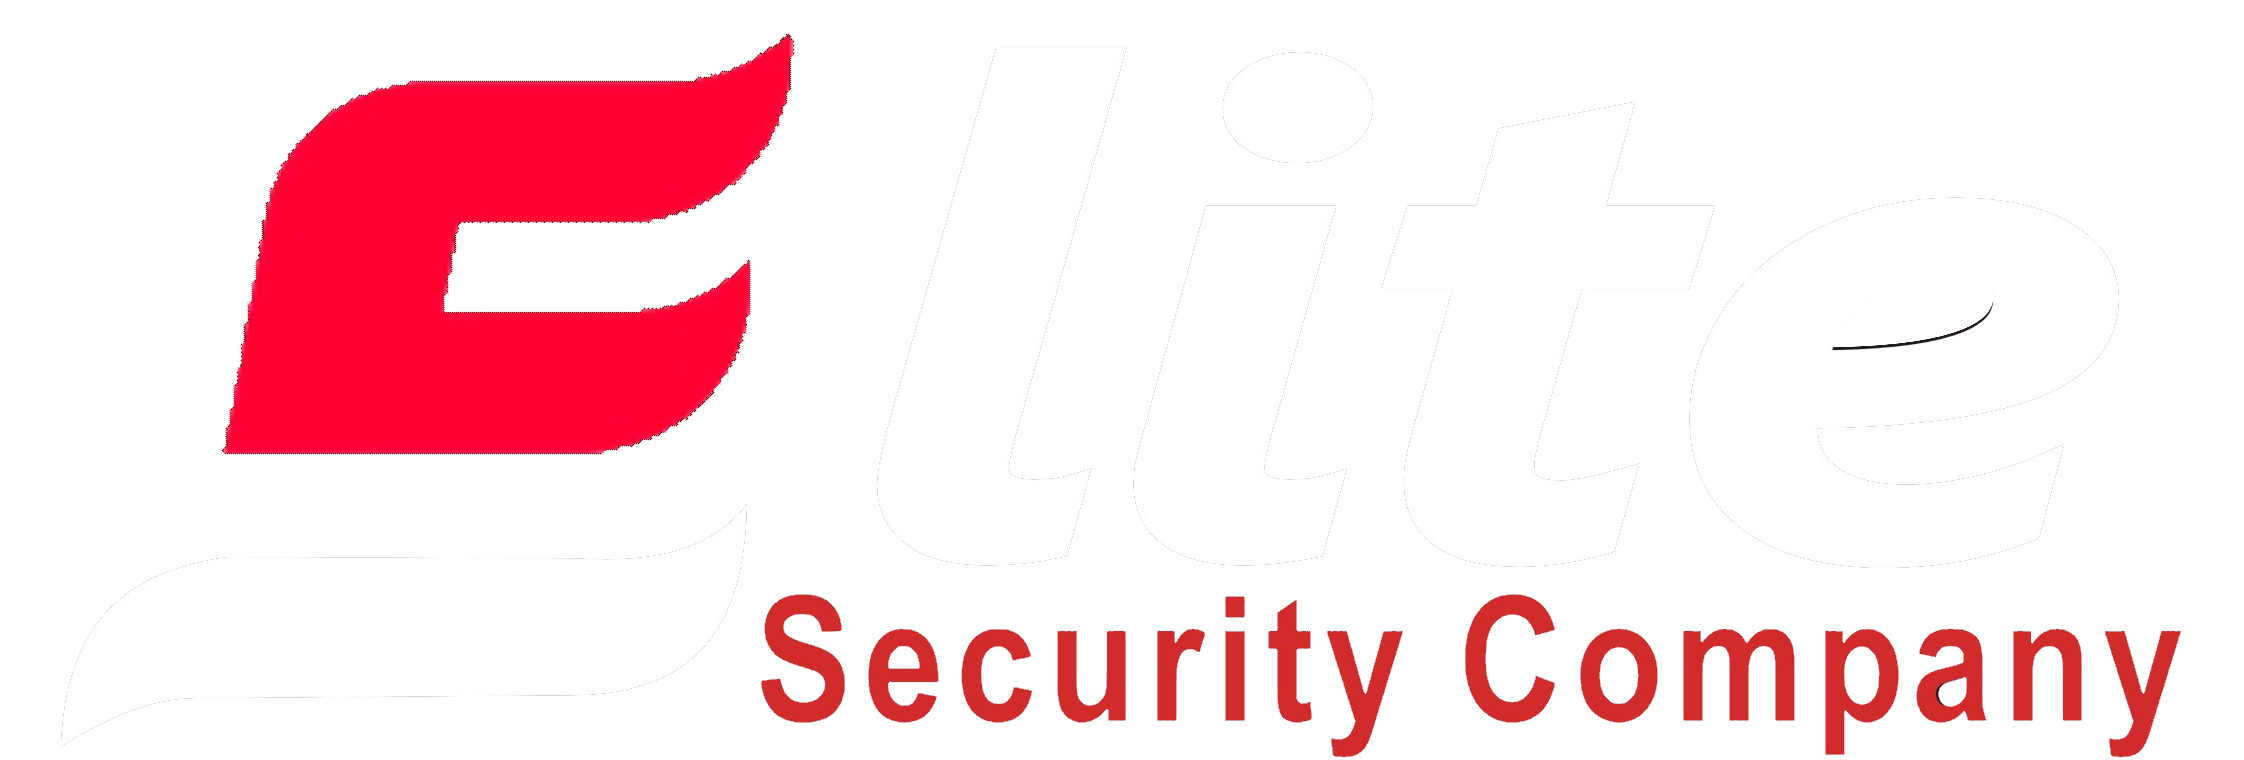 Elite Security Company